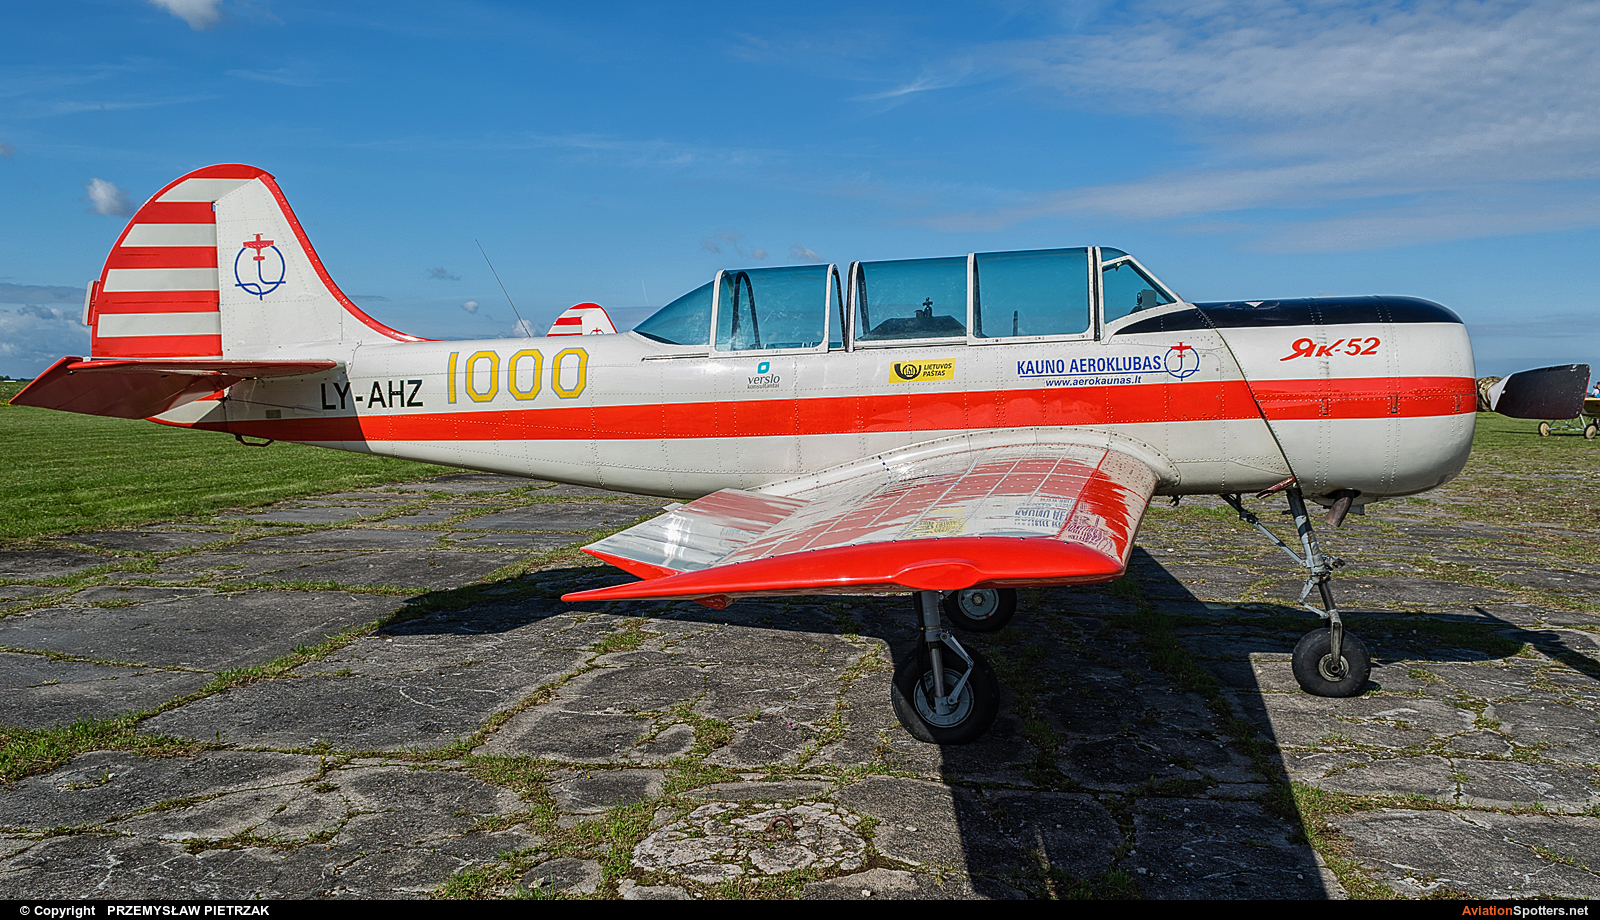 Kauno Aeroklubas  -  Yak-52  (LY-AHZ) By PRZEMYSŁAW PIETRZAK (PEPE74)